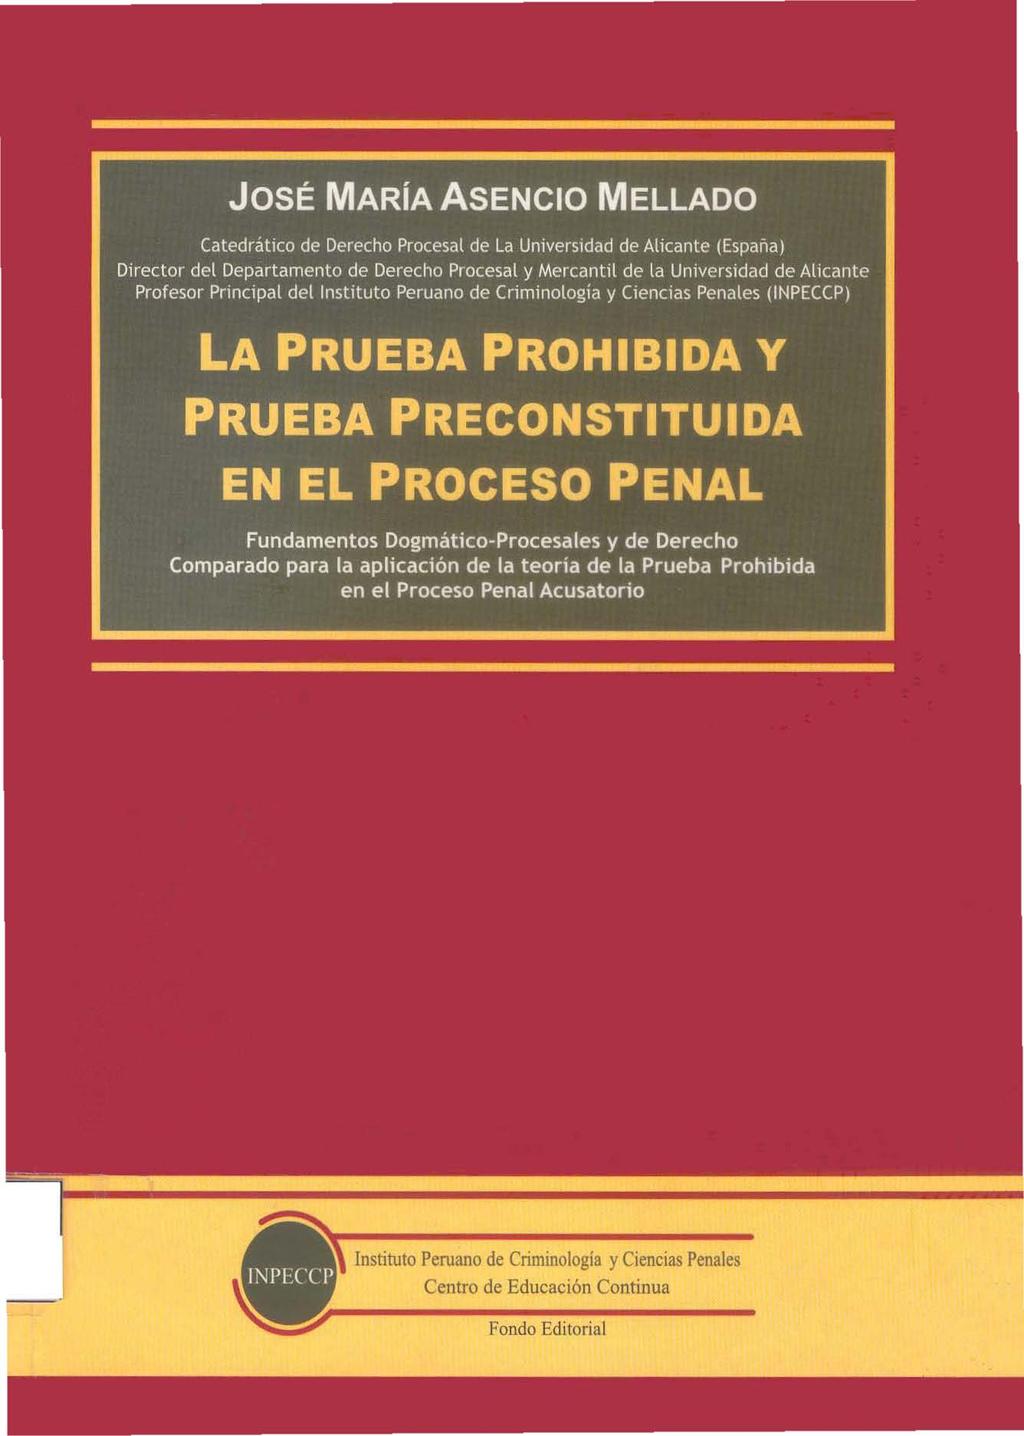 Instituto Peruano de Criminología y Ciencias